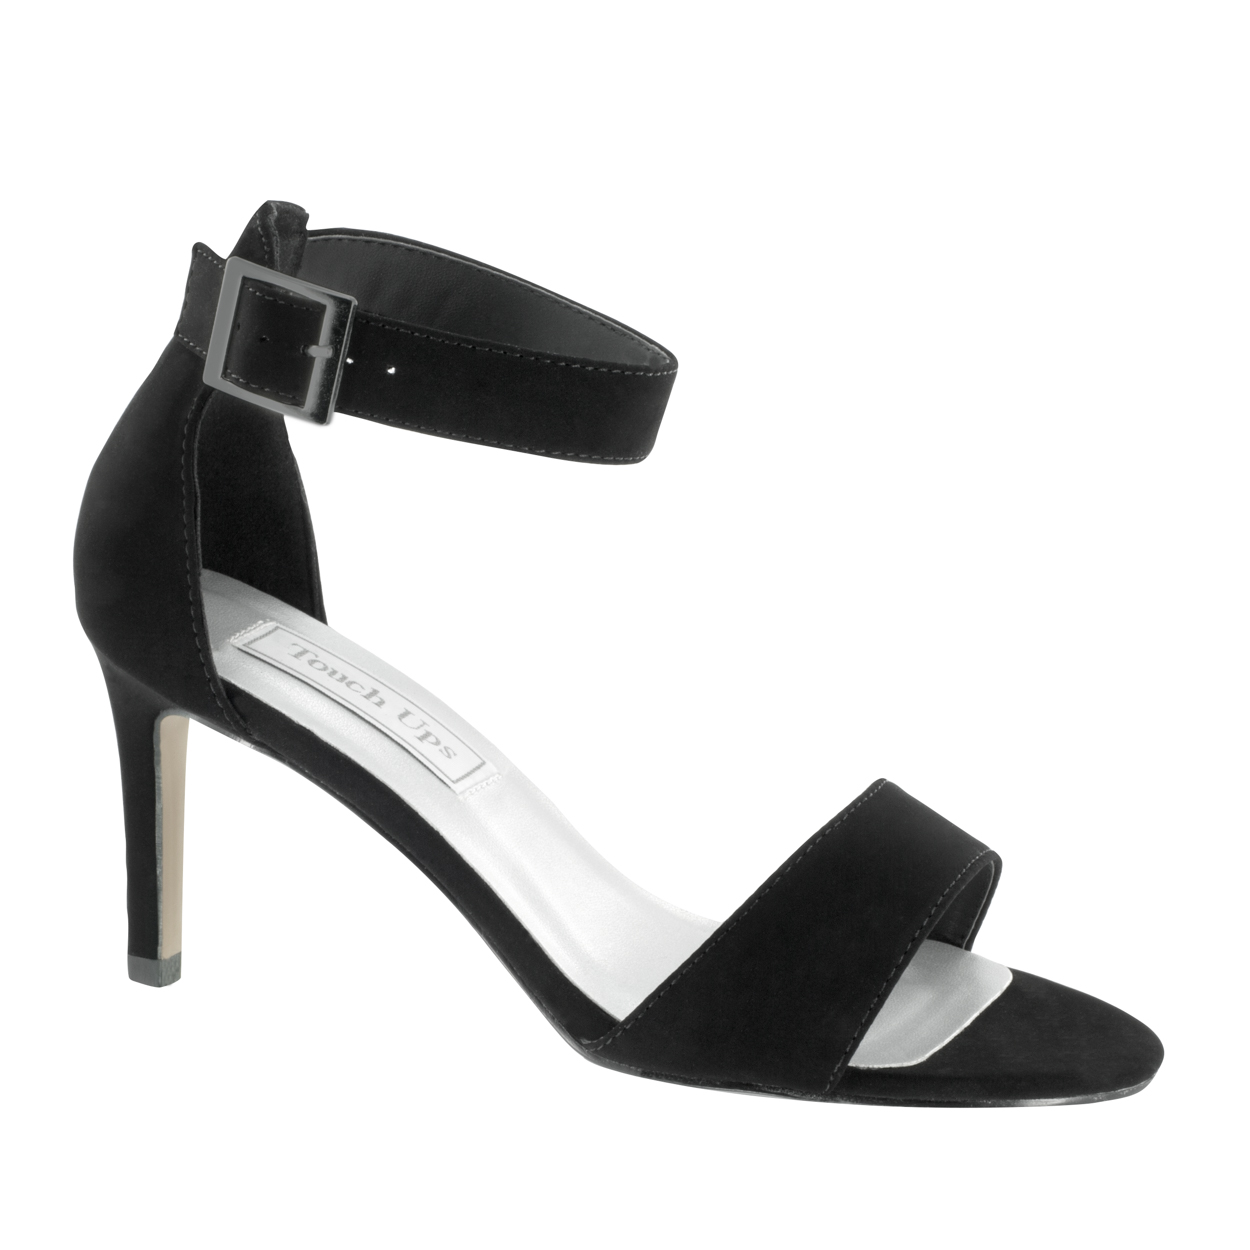 Fergalicious Women's Shoes size 9 Black Open Toe 4 inch Heels | eBay